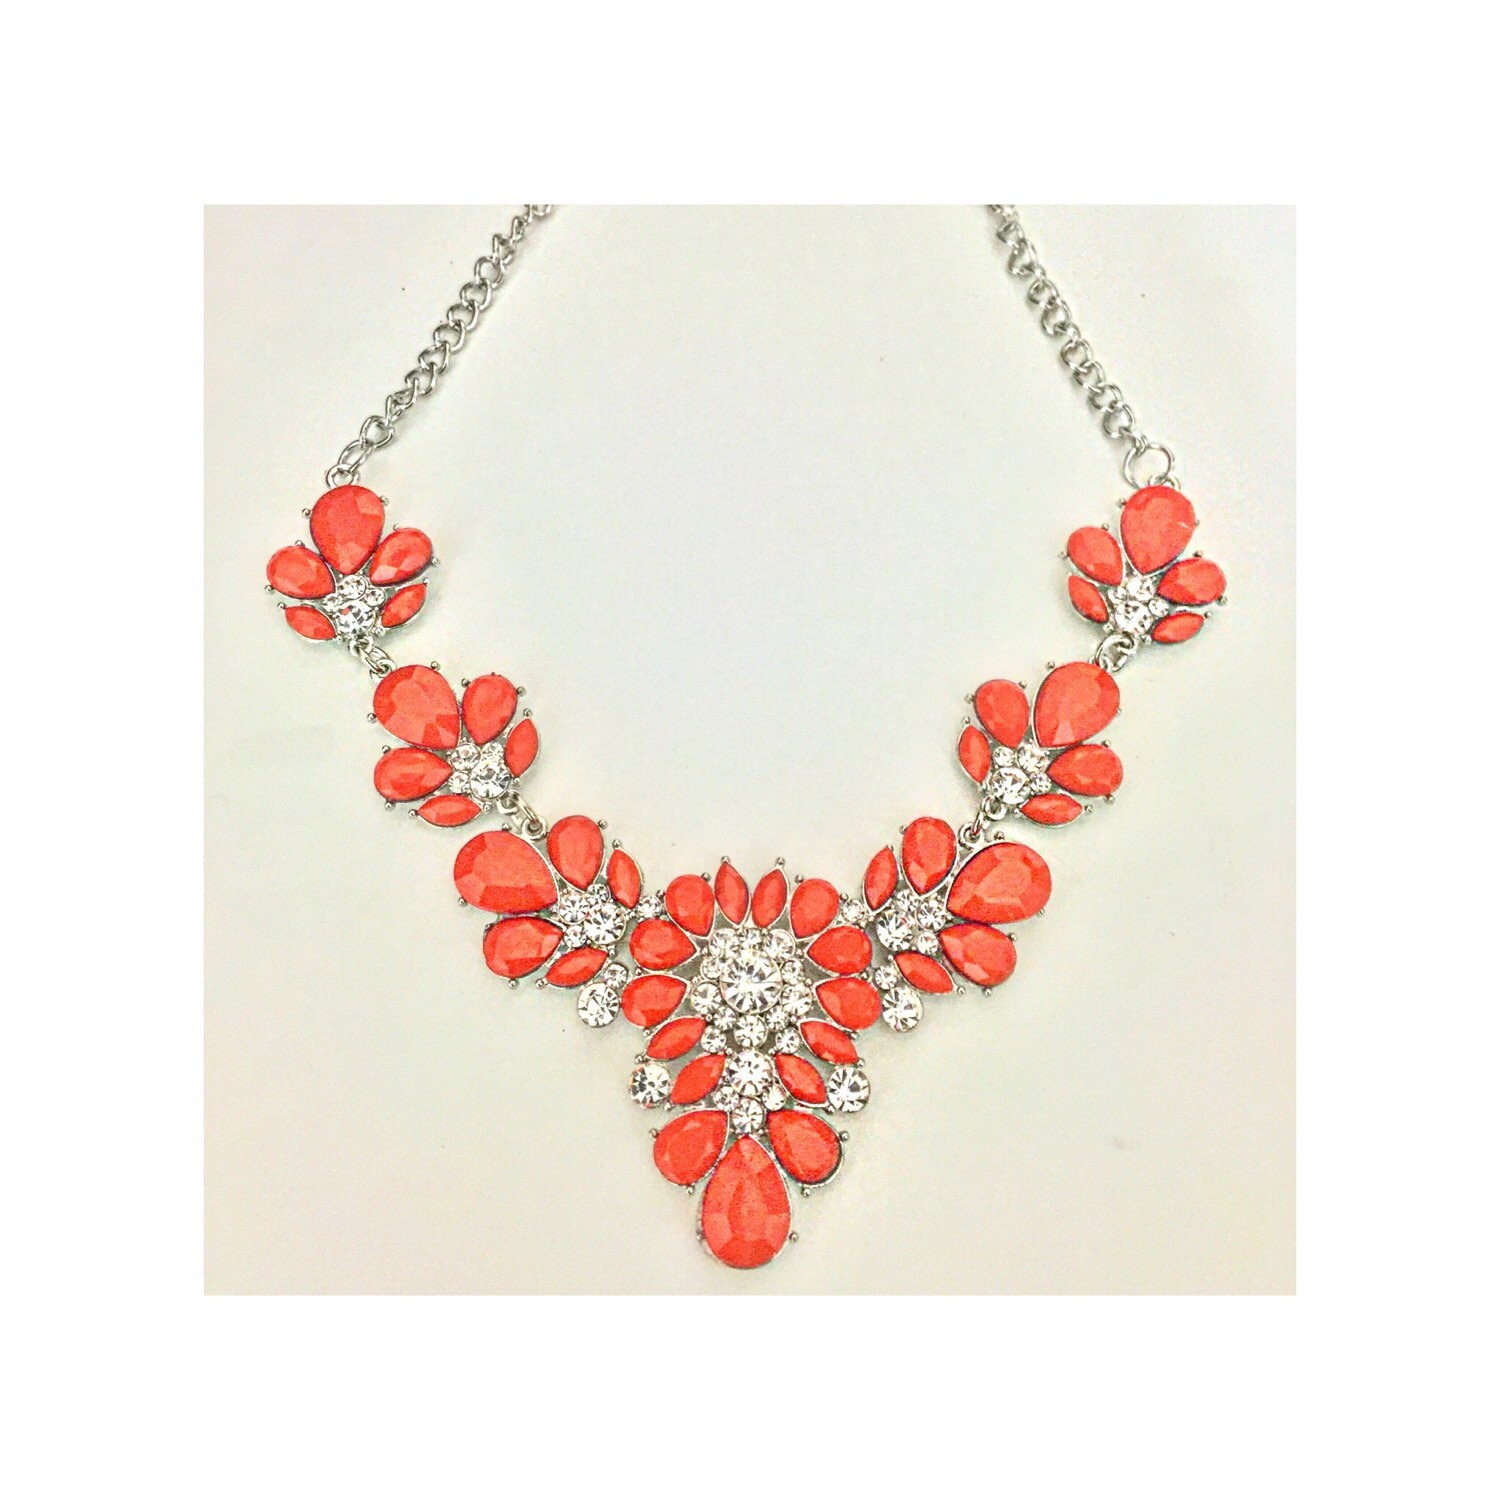 Orange Stone Crystal Fashion Necklace by JewelDazzleStore on Etsy